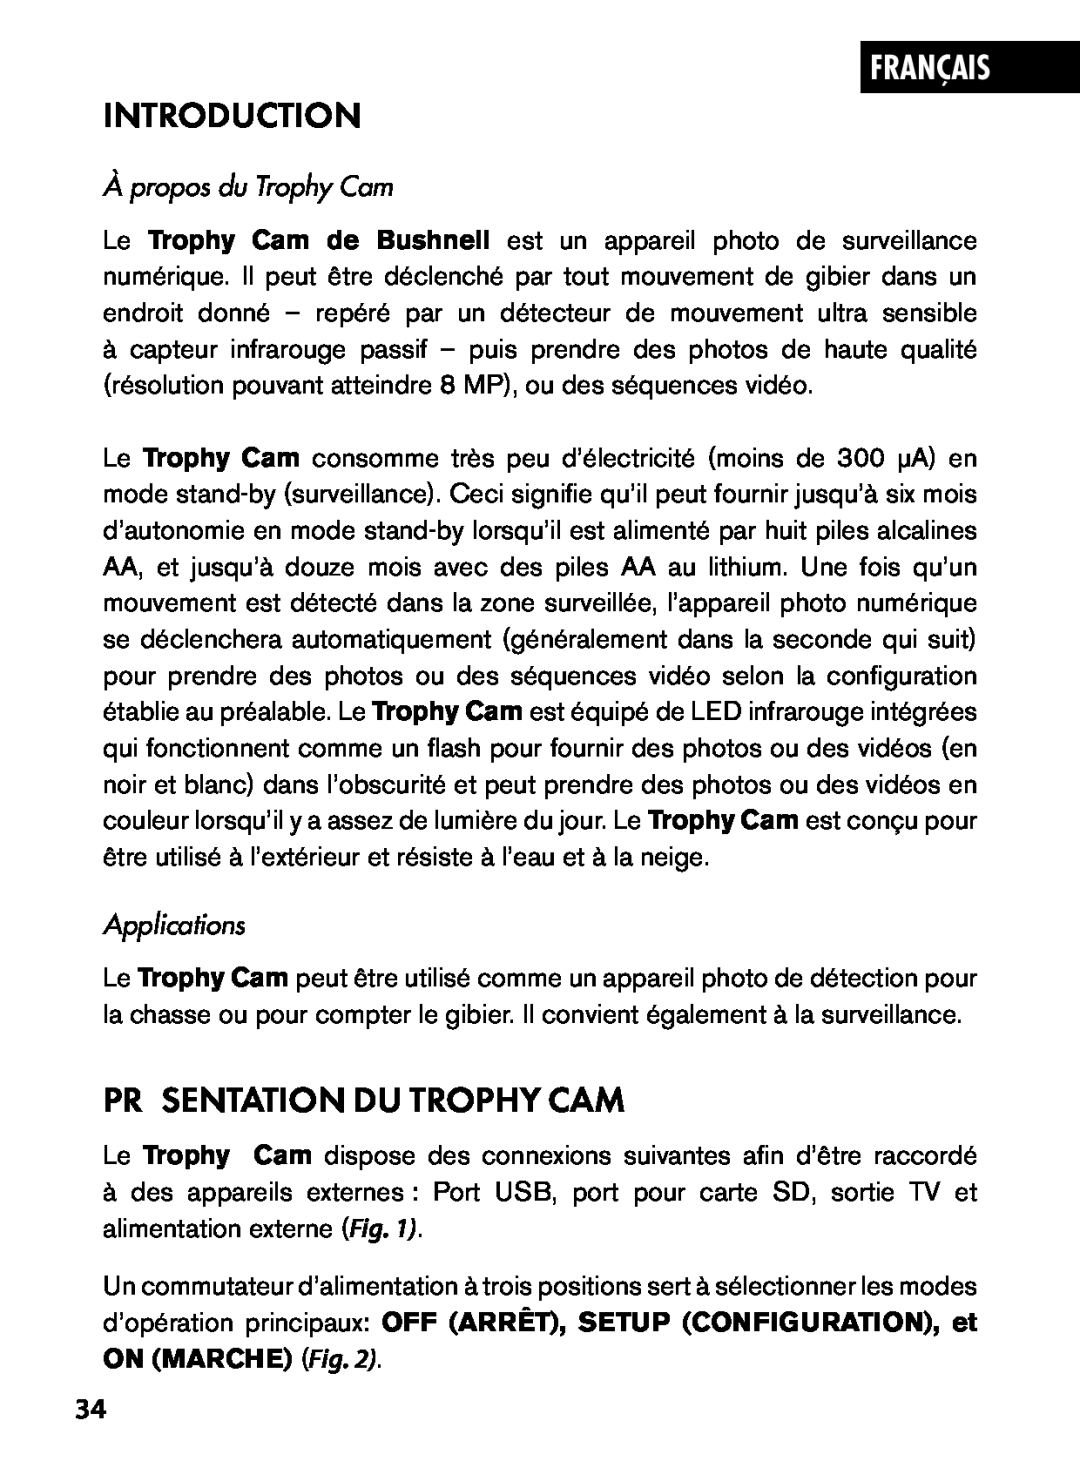 Bushnell 119445, 119455, 119435 Présentation Du Trophy Cam, Français, Introduction, À propos du Trophy Cam, Applications 